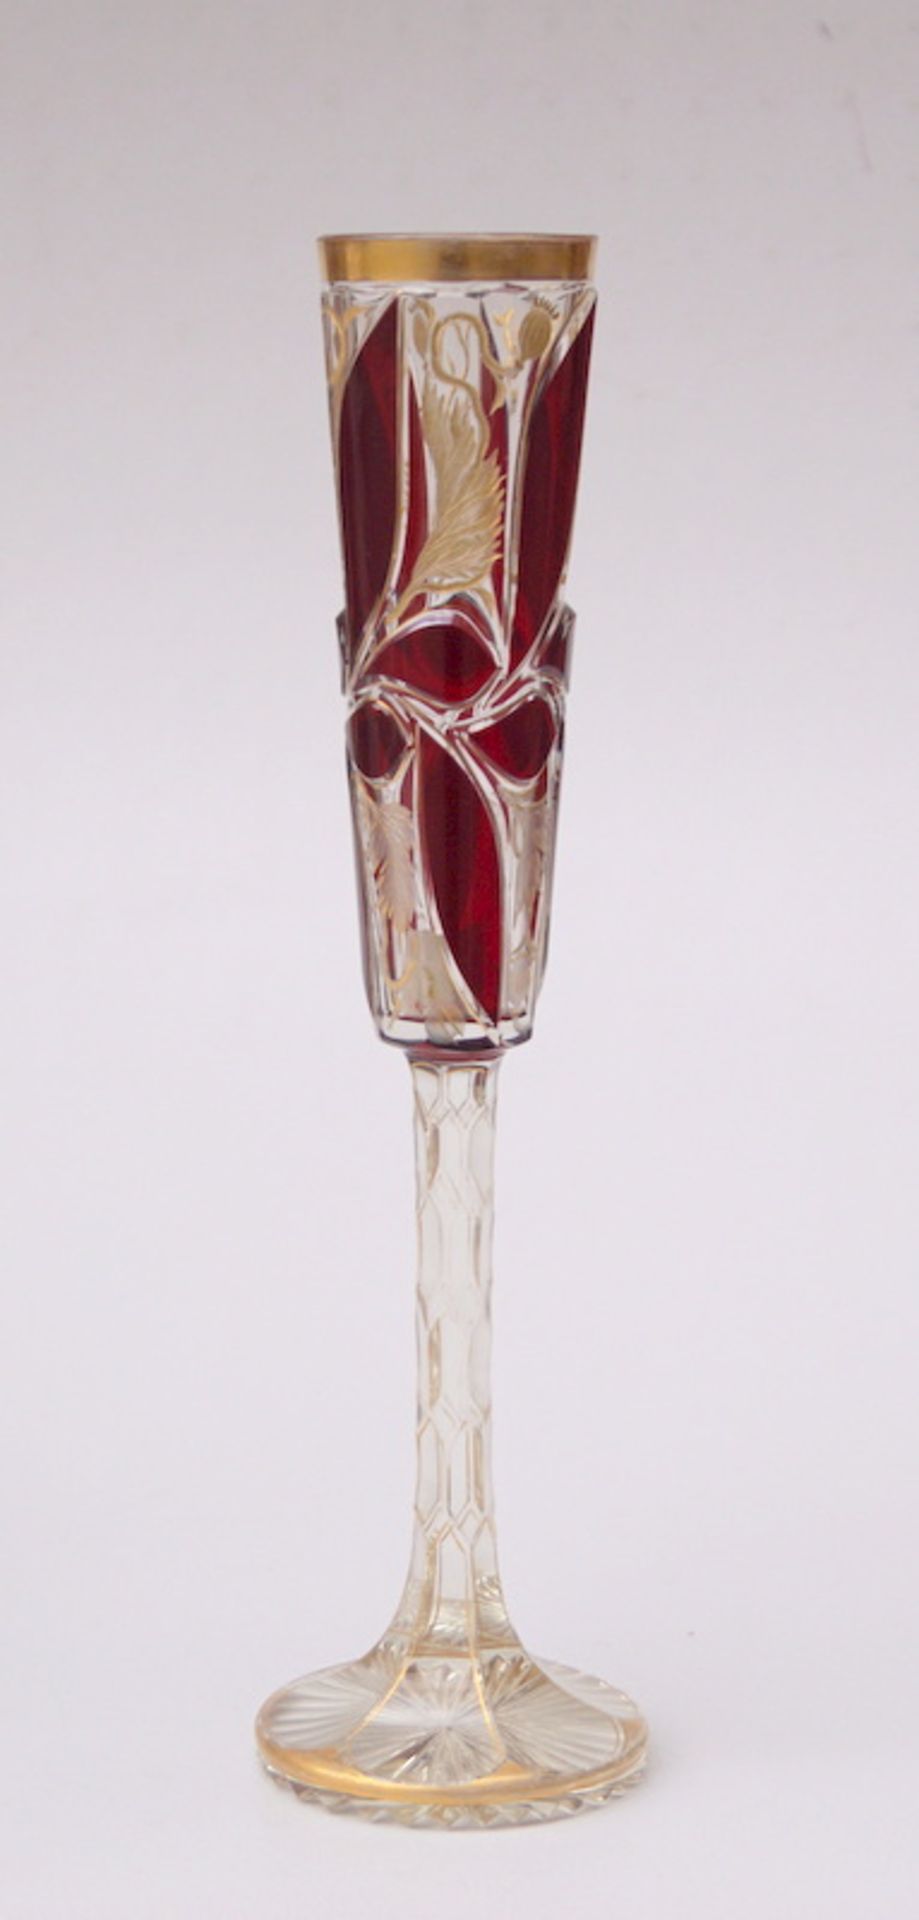 Böhmischer Stengelpokal, um 1900farbloses Kristallglas rubinrot überfangen, partiell vergoldet,